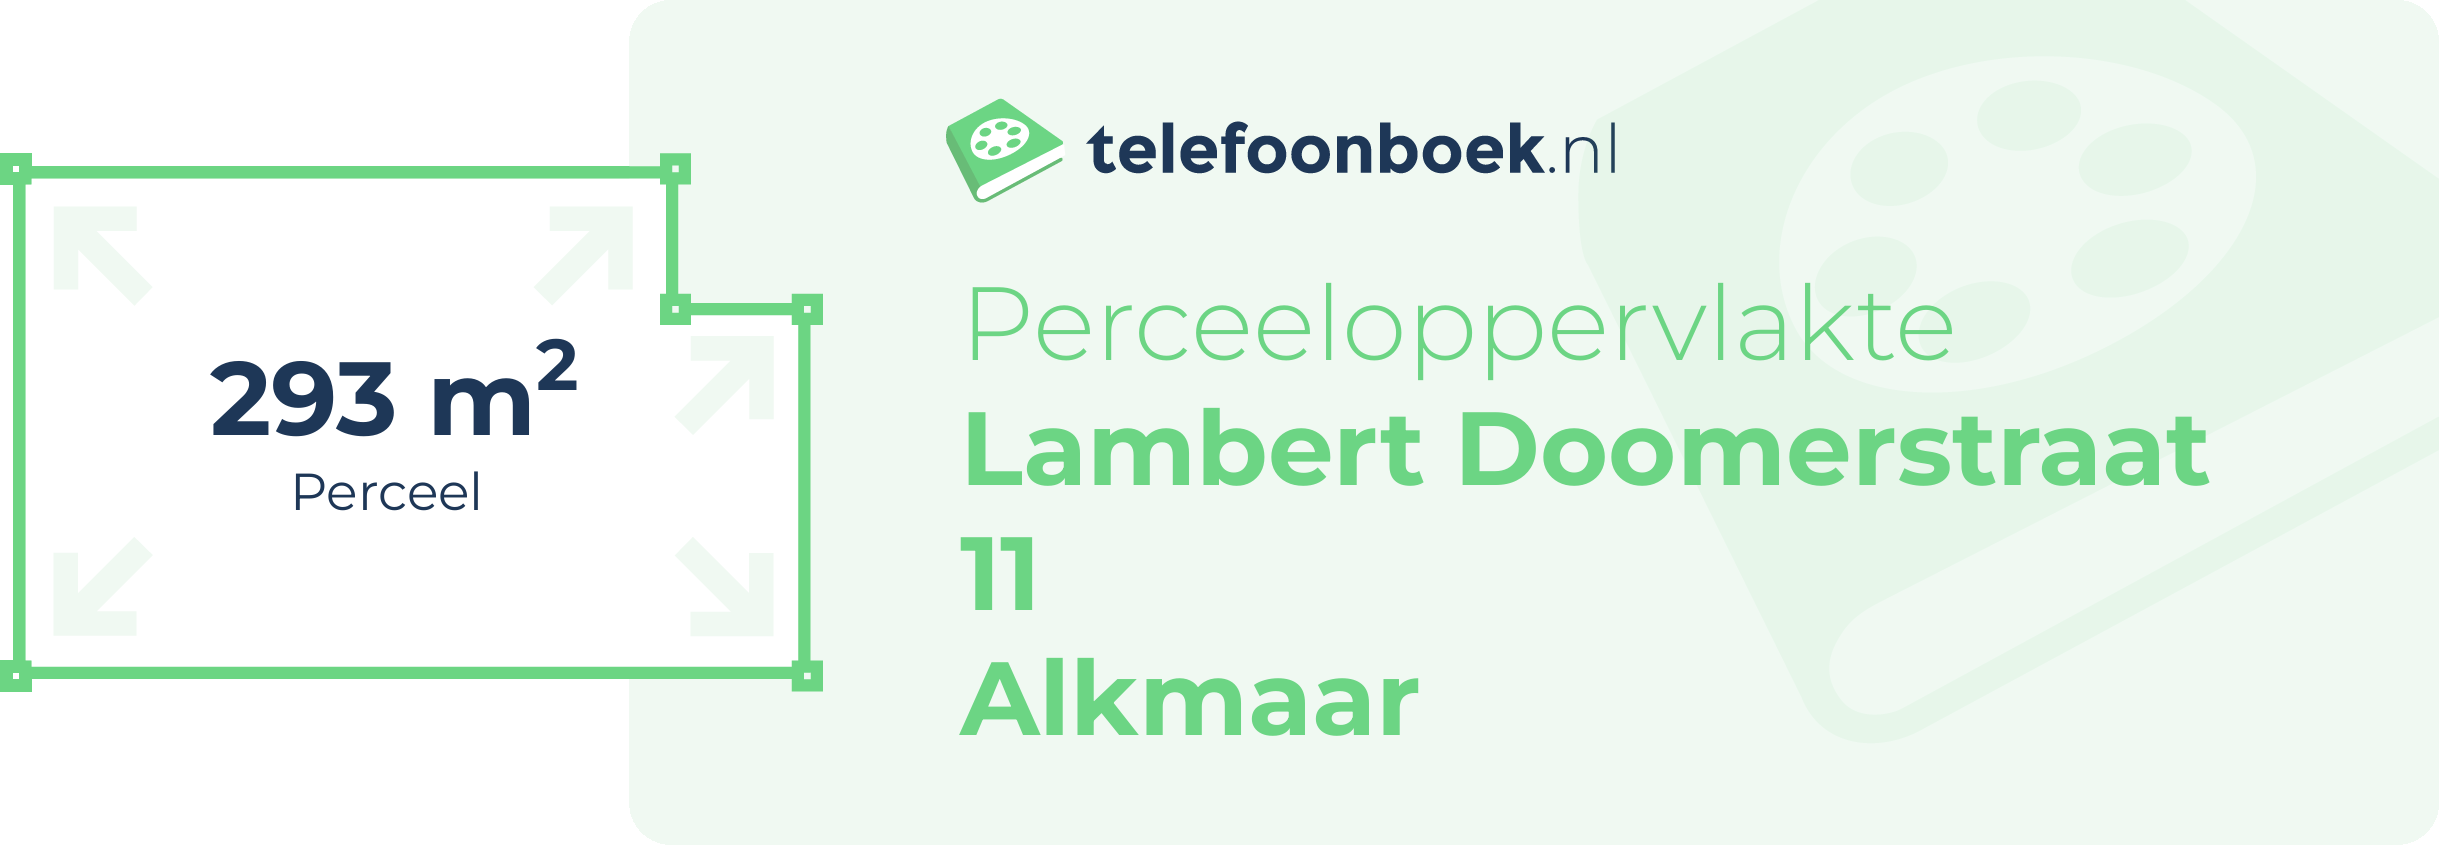 Perceeloppervlakte Lambert Doomerstraat 11 Alkmaar